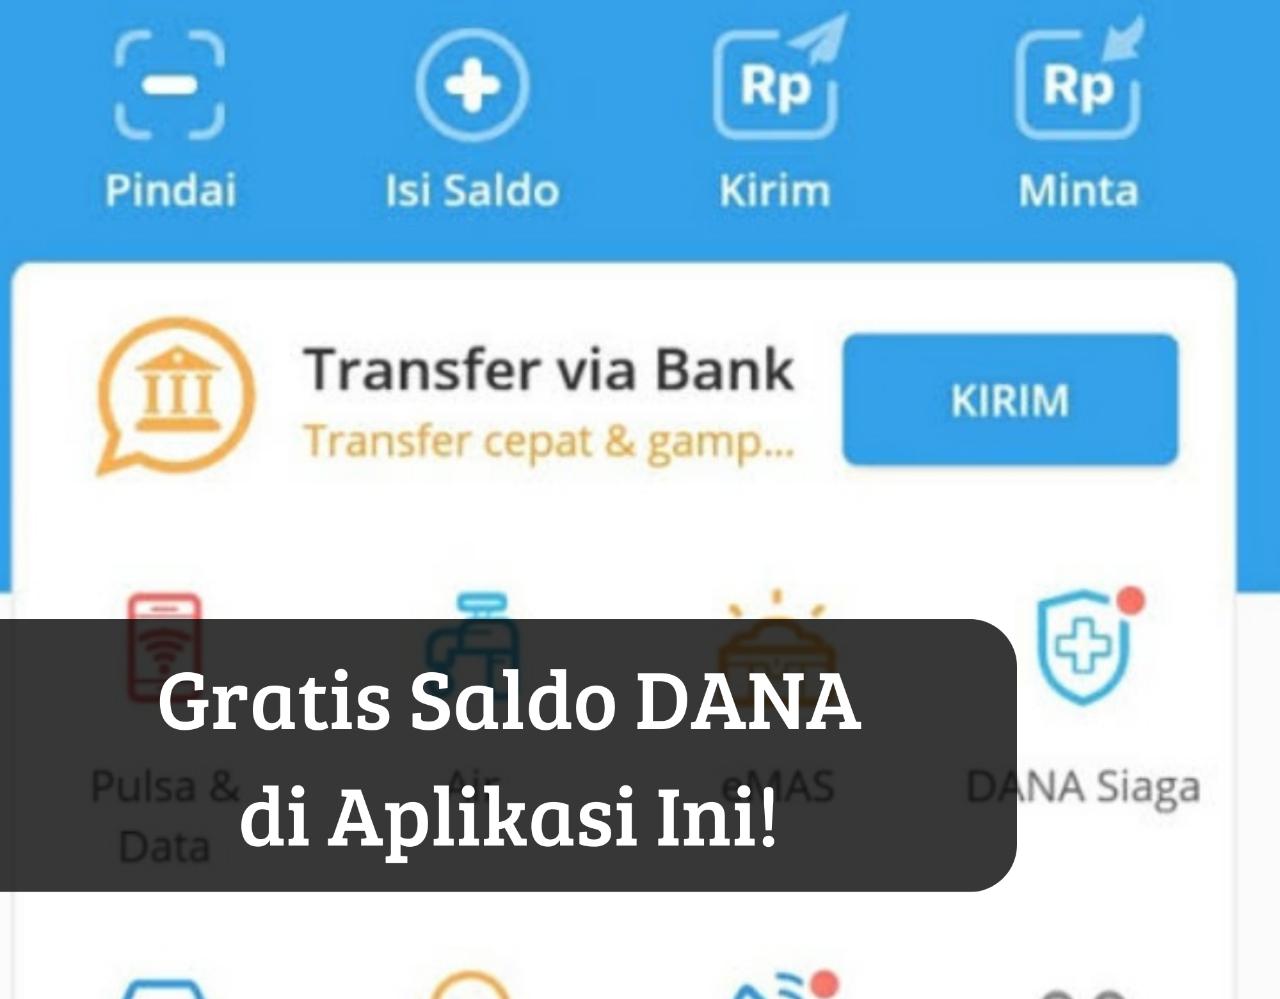 Saldo DANA Rp100.000 Masuk Dompet Digital, Caranya Gampang Cukup Download Aplikasi Penghasil Koin DANA di Sini